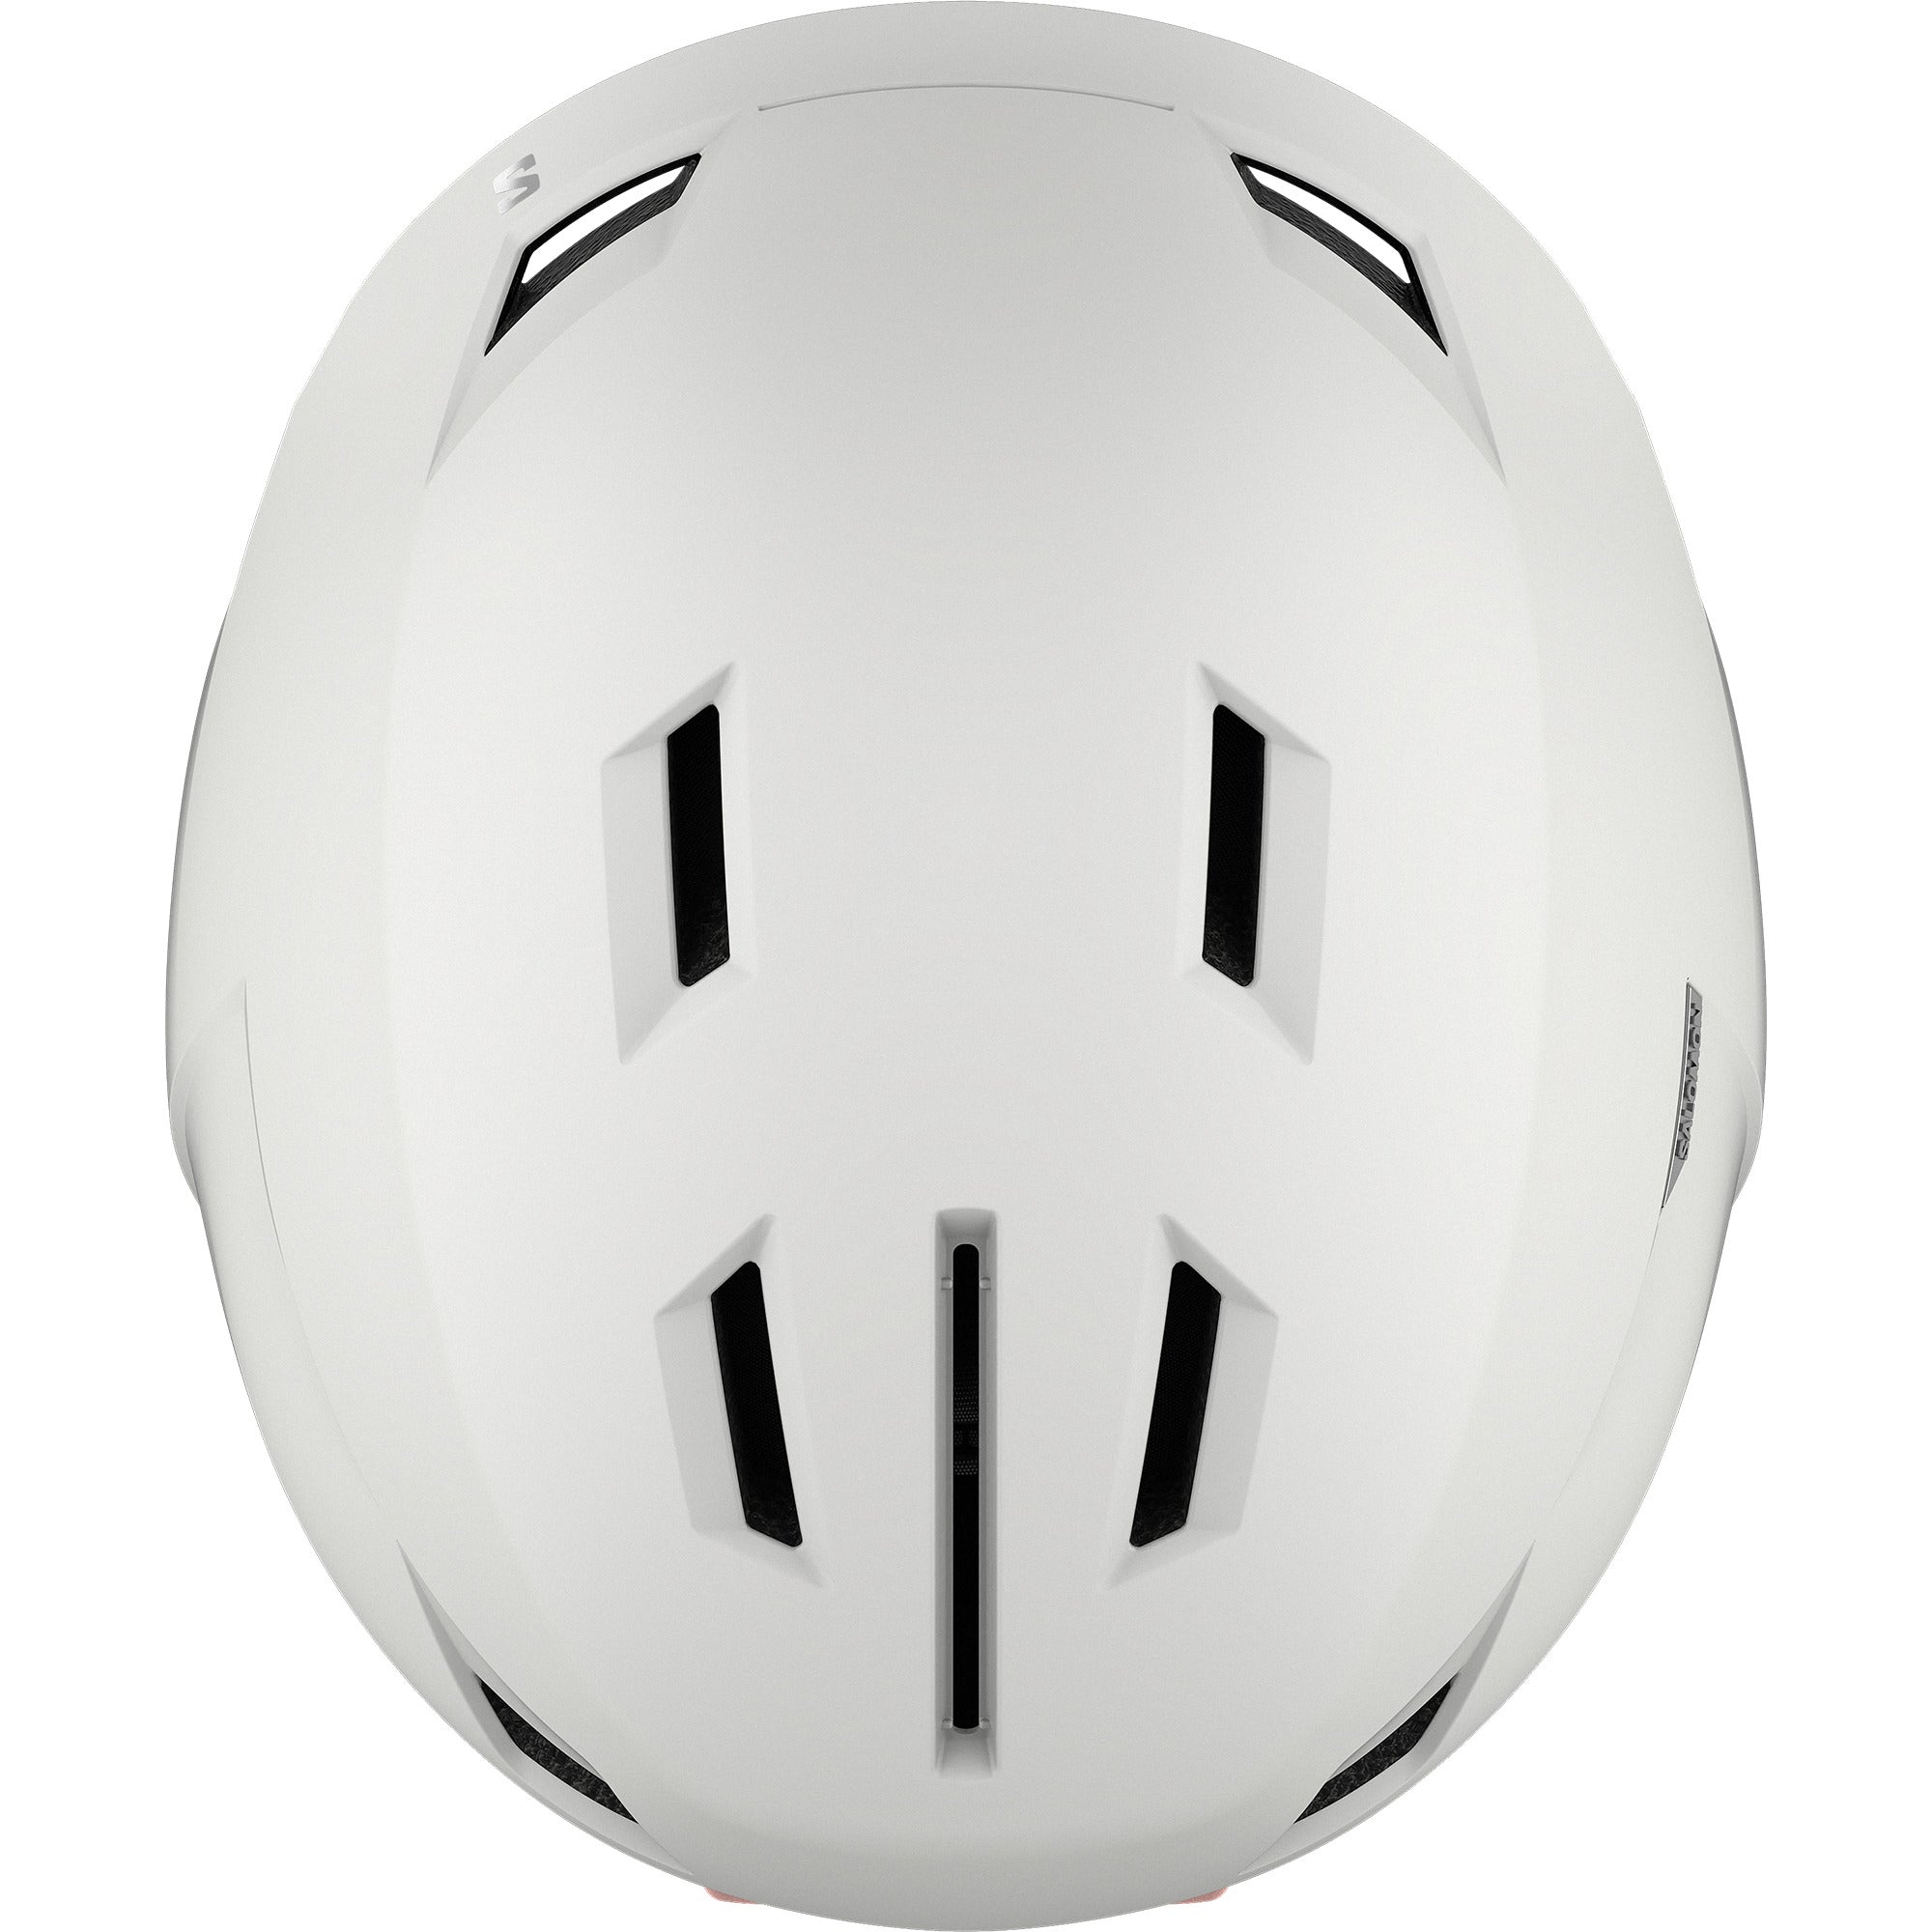 Icon LT Snow Helmet